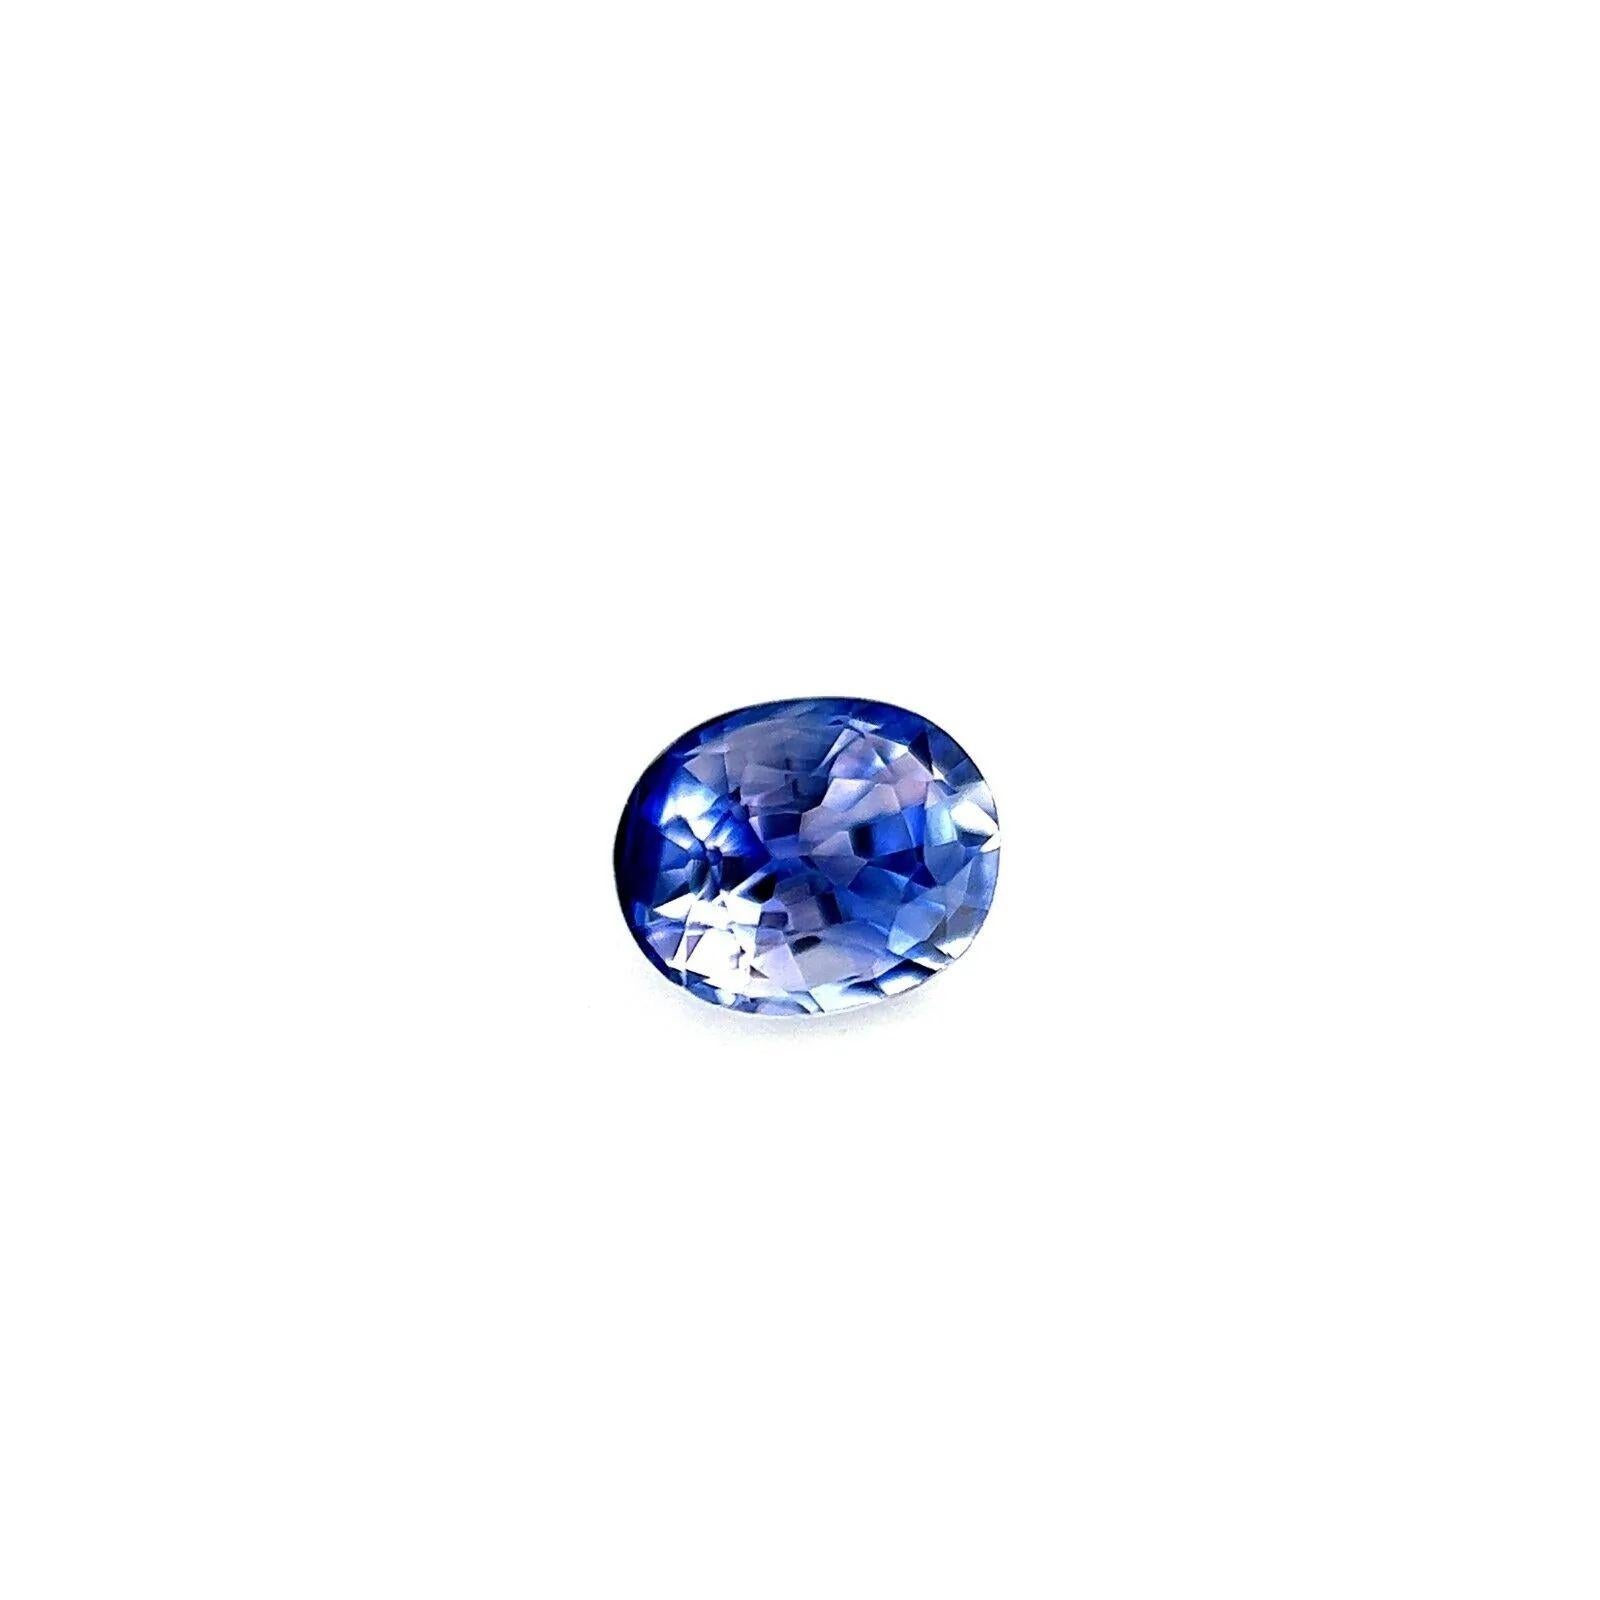 Unique Fine Ceylon Blue Violet Sapphire 0.45ct Oval Cut Blue Rare 4.5x3.7mm VVS

Saphir bleu violet de Ceylan unique en son genre.
Saphir de 0,45 carat d'une rare et unique couleur bleu violet vif.
Il présente également une très bonne clarté, une